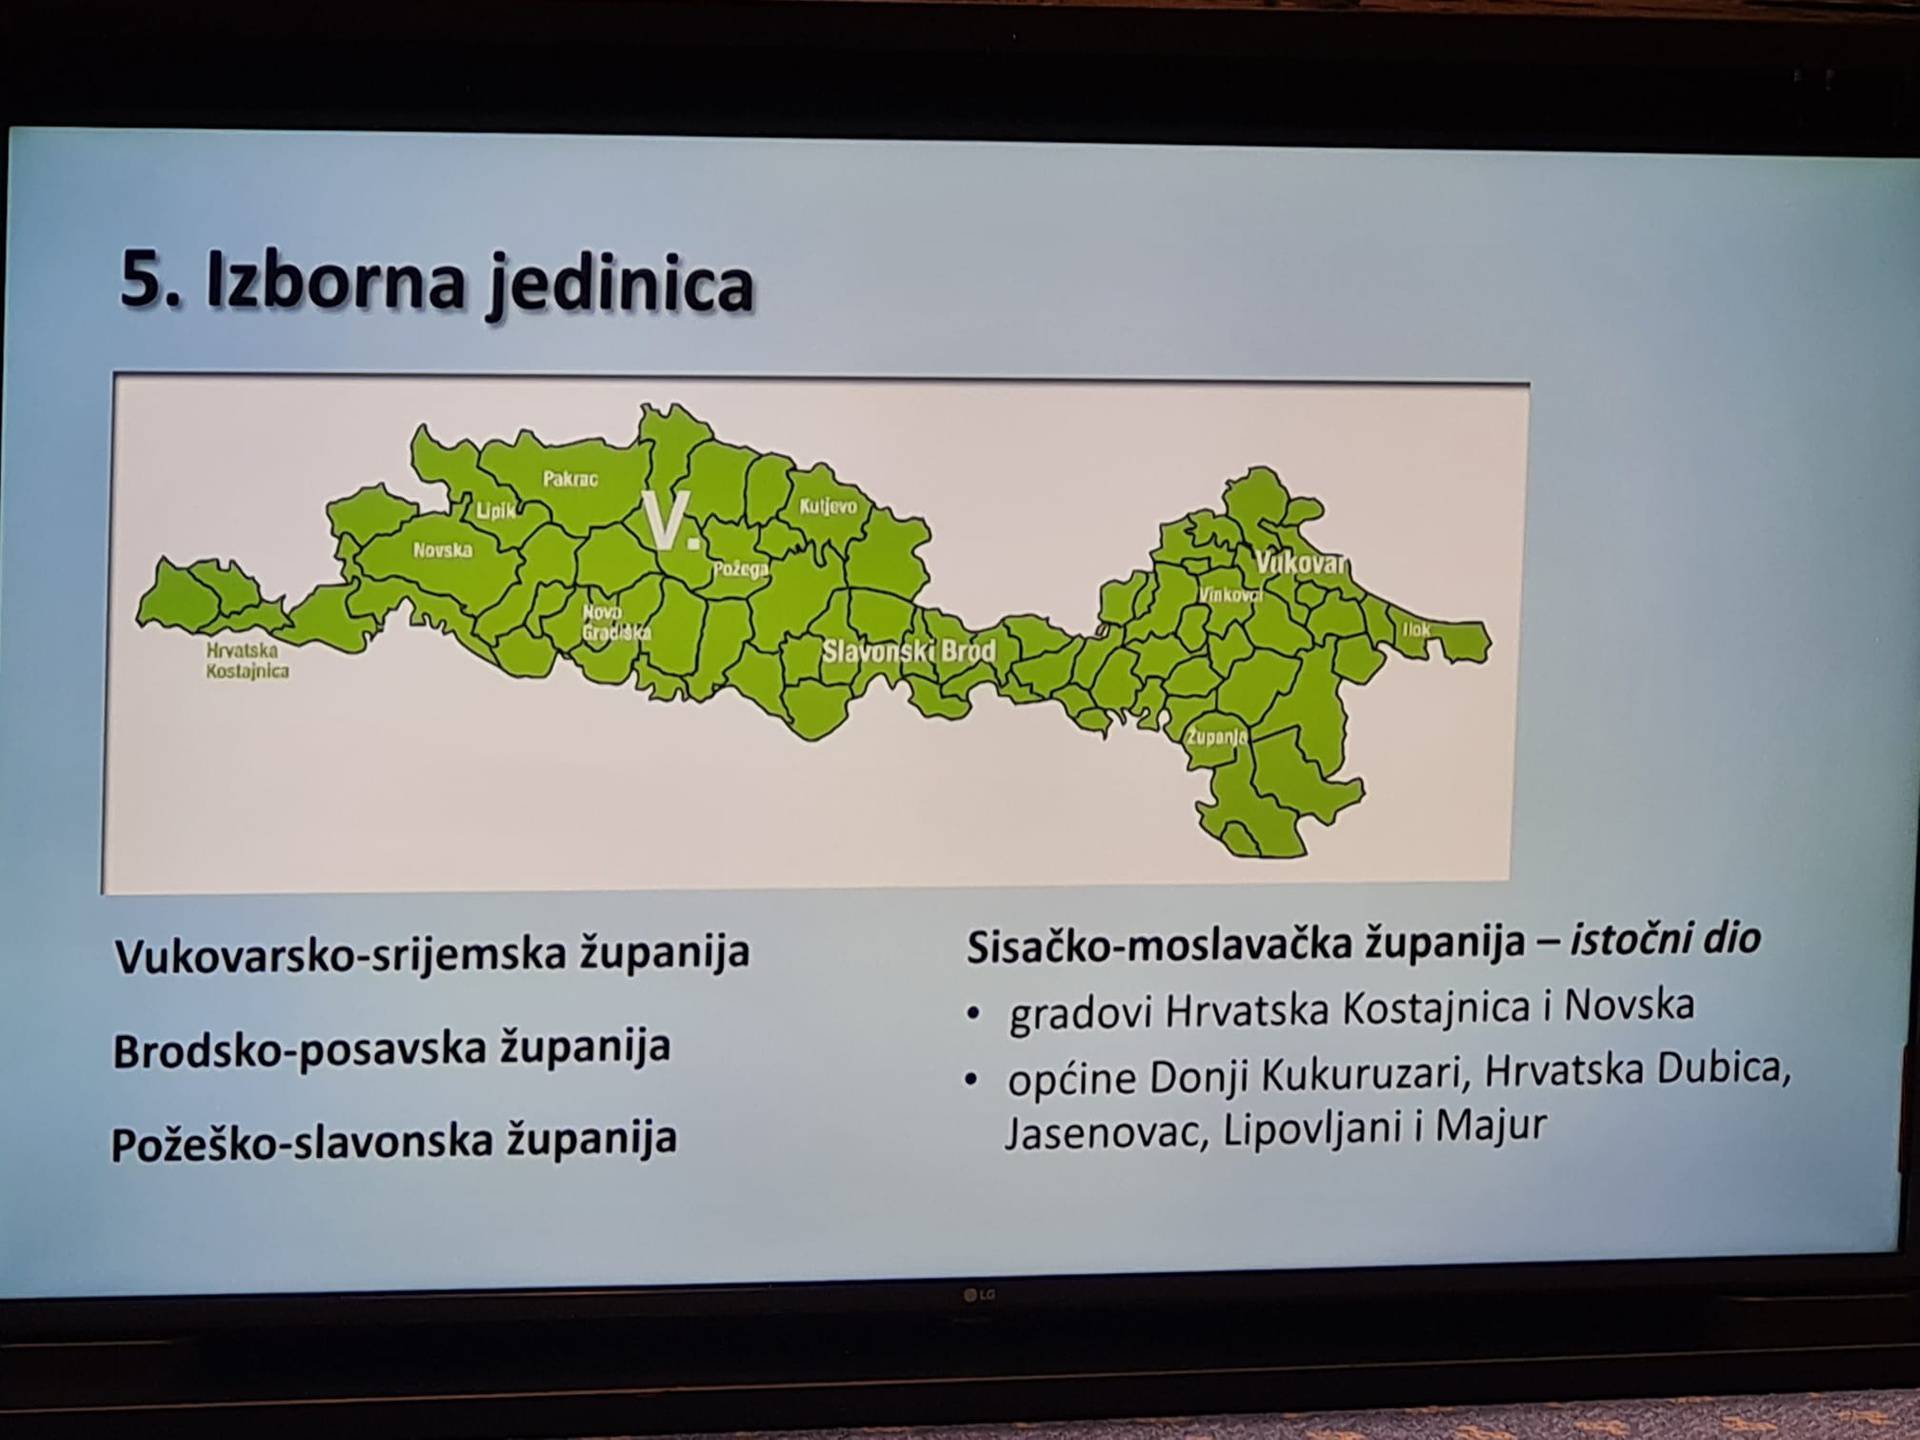 Ovo su nove izborne jedinice. Plenković: Promjene za 22% građana, najviše u Zagrebu